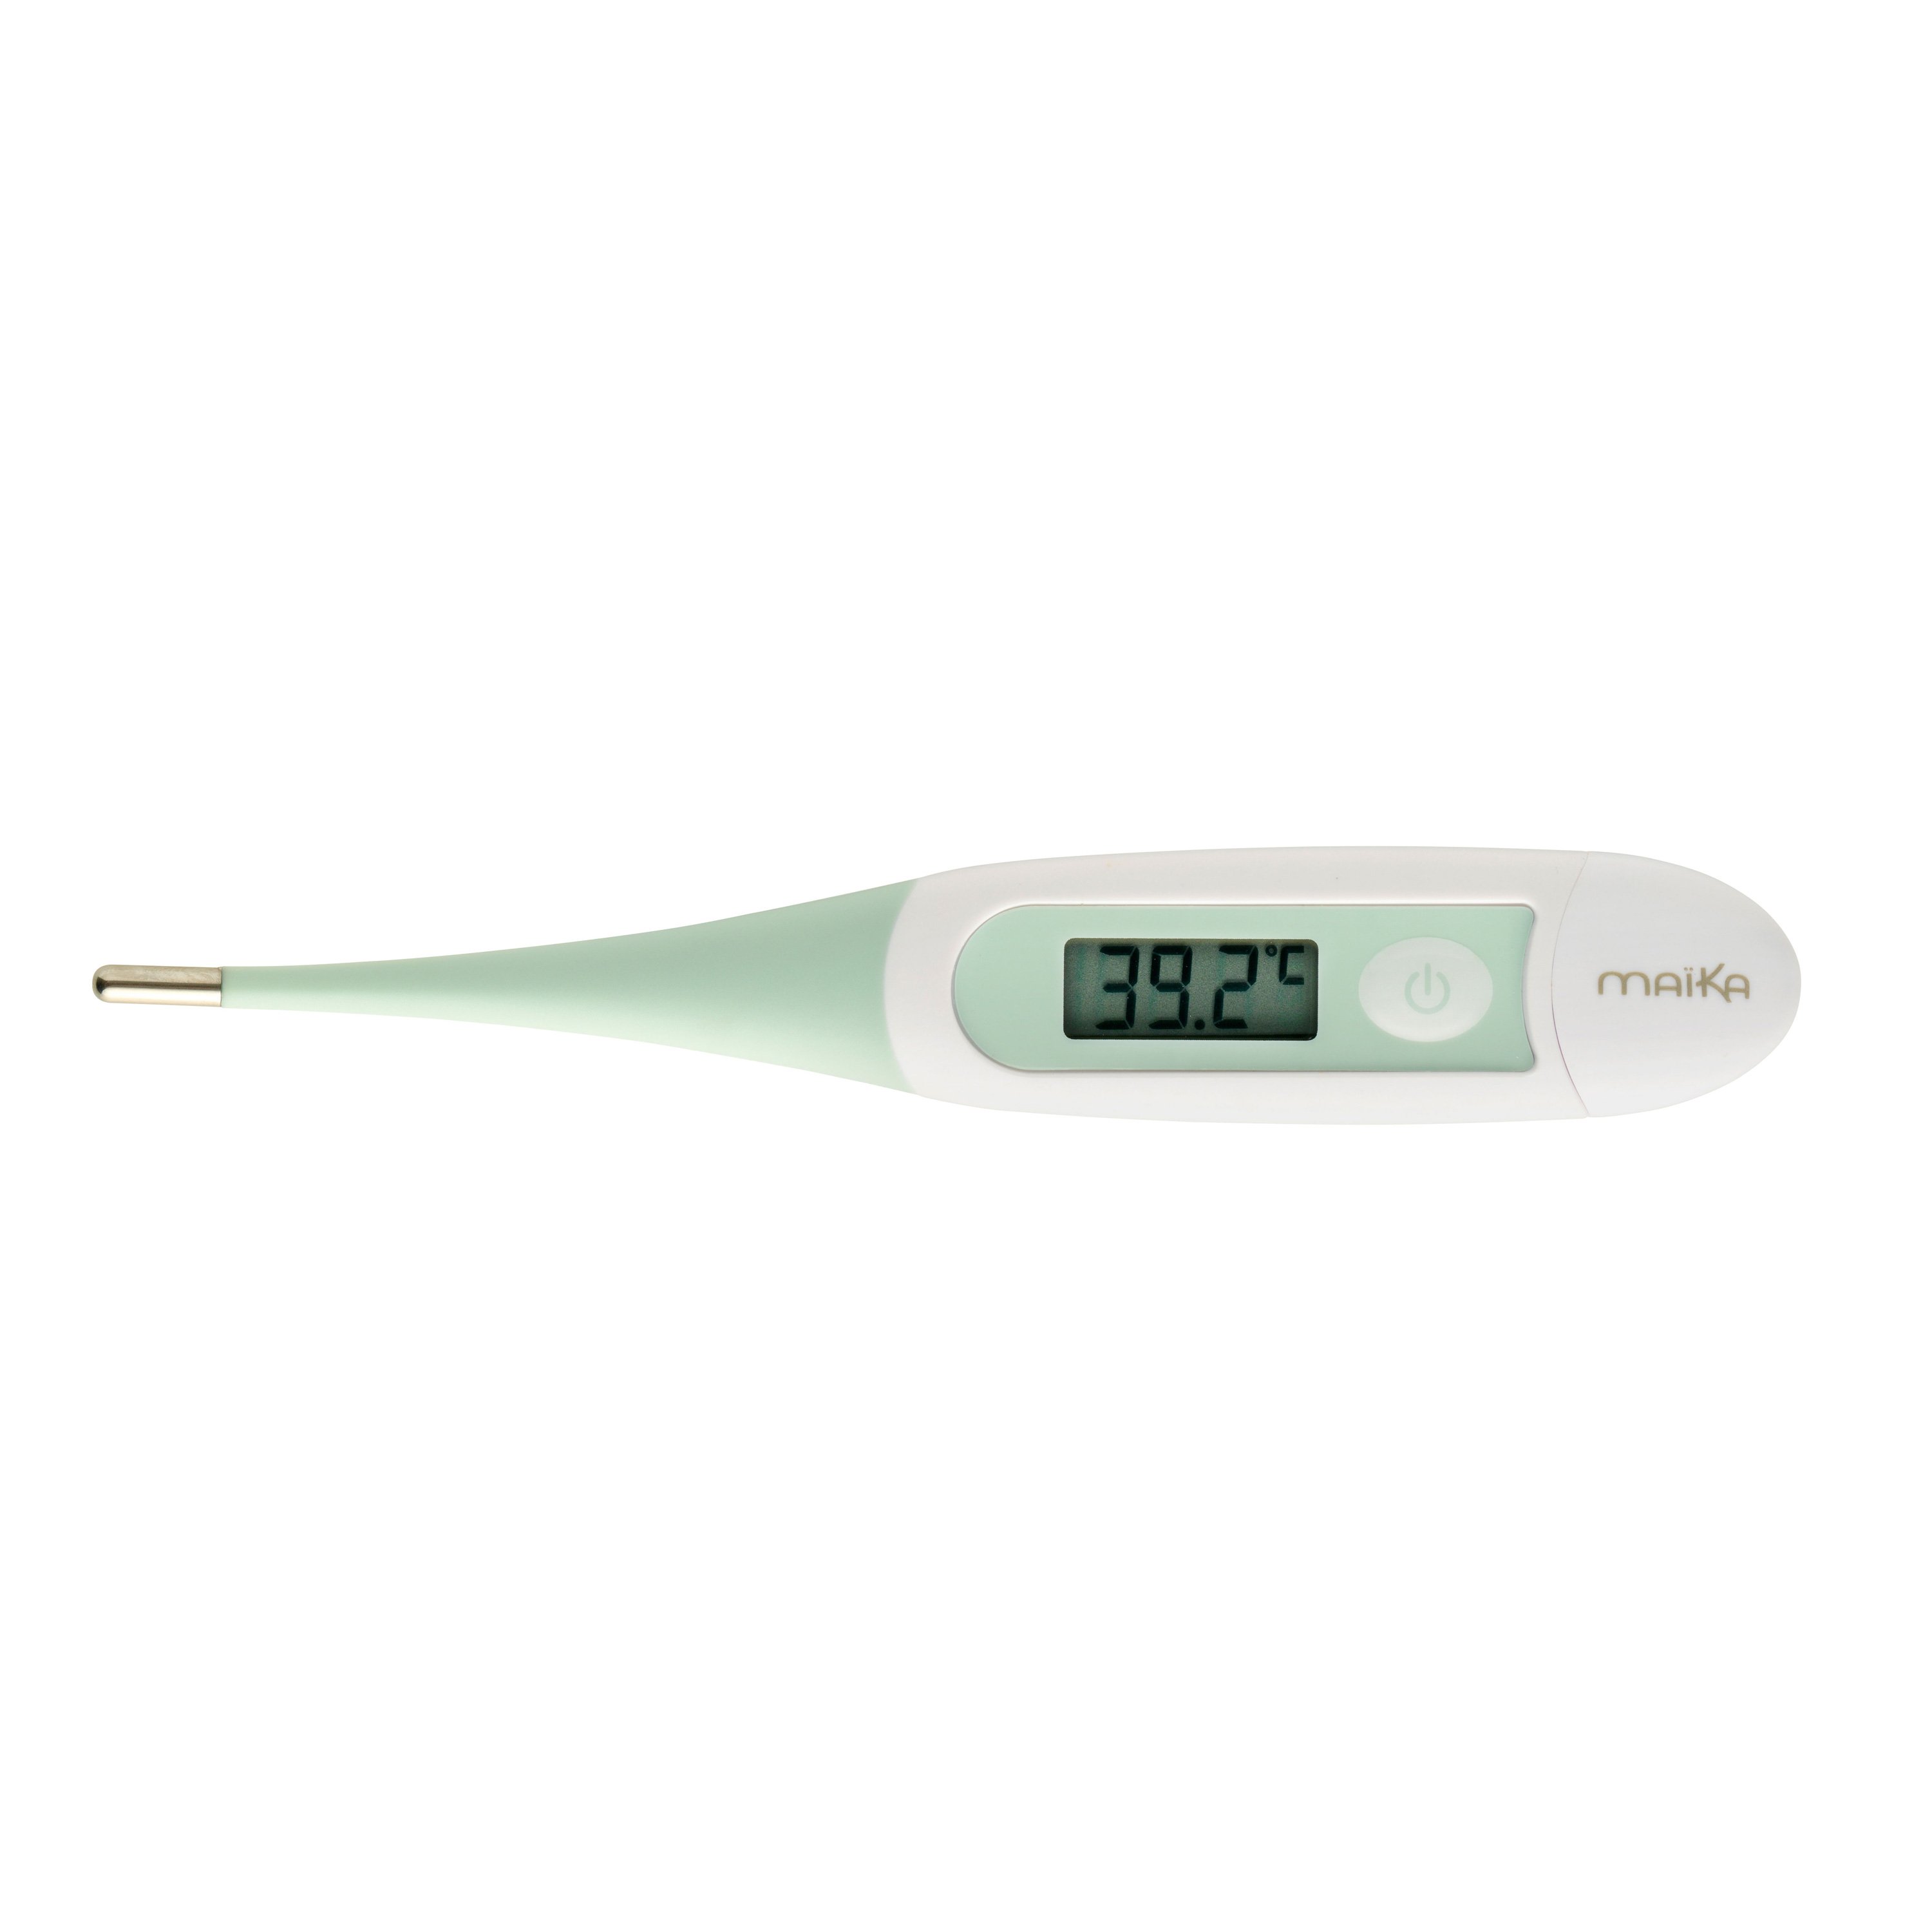 Avis thermomètre bébé – Mon thermomètre